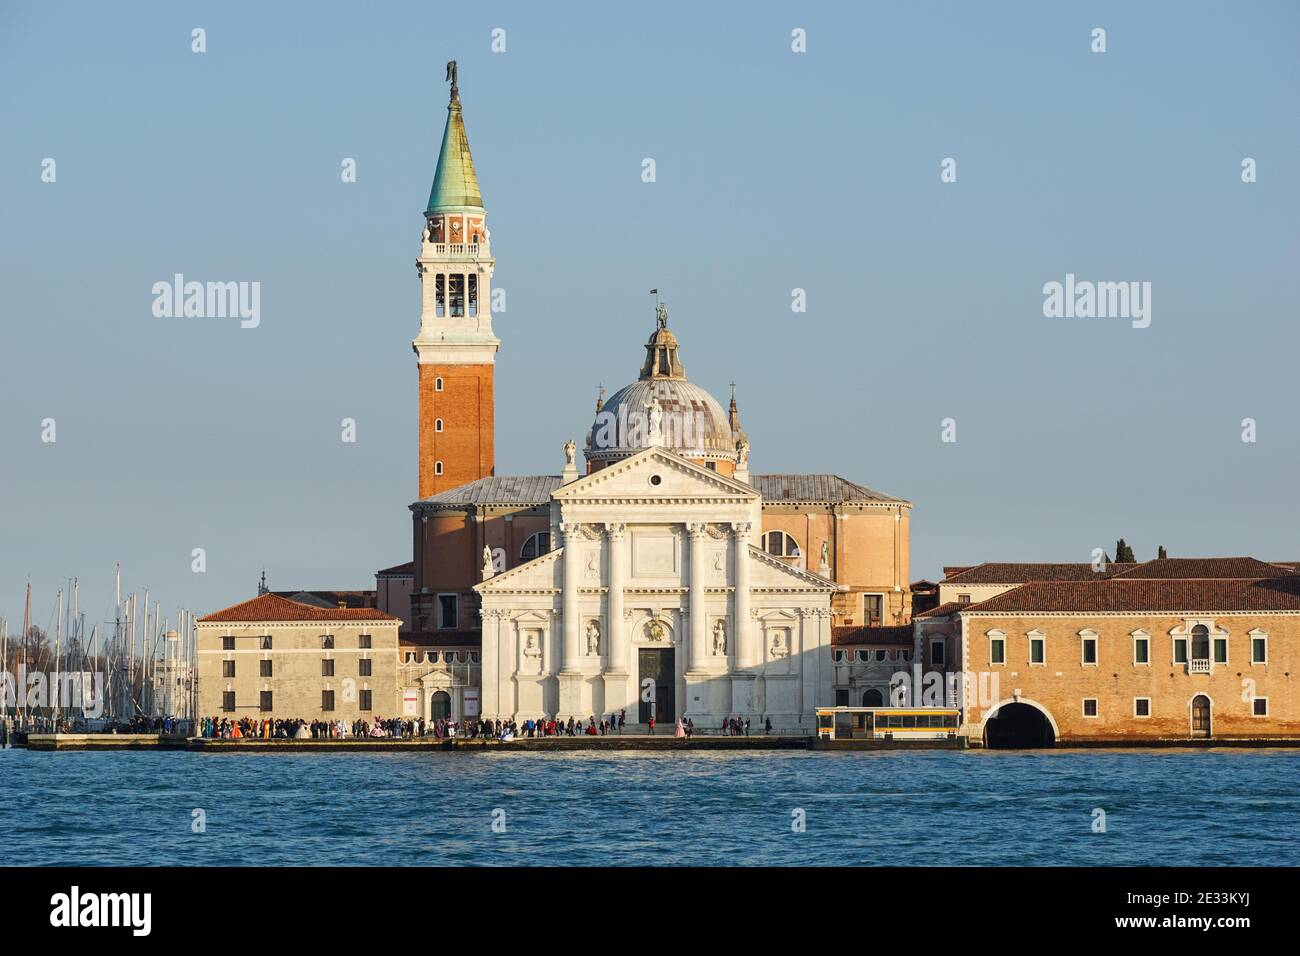 El Monasterio de San Giorgio en Venecia, Italia Foto de stock